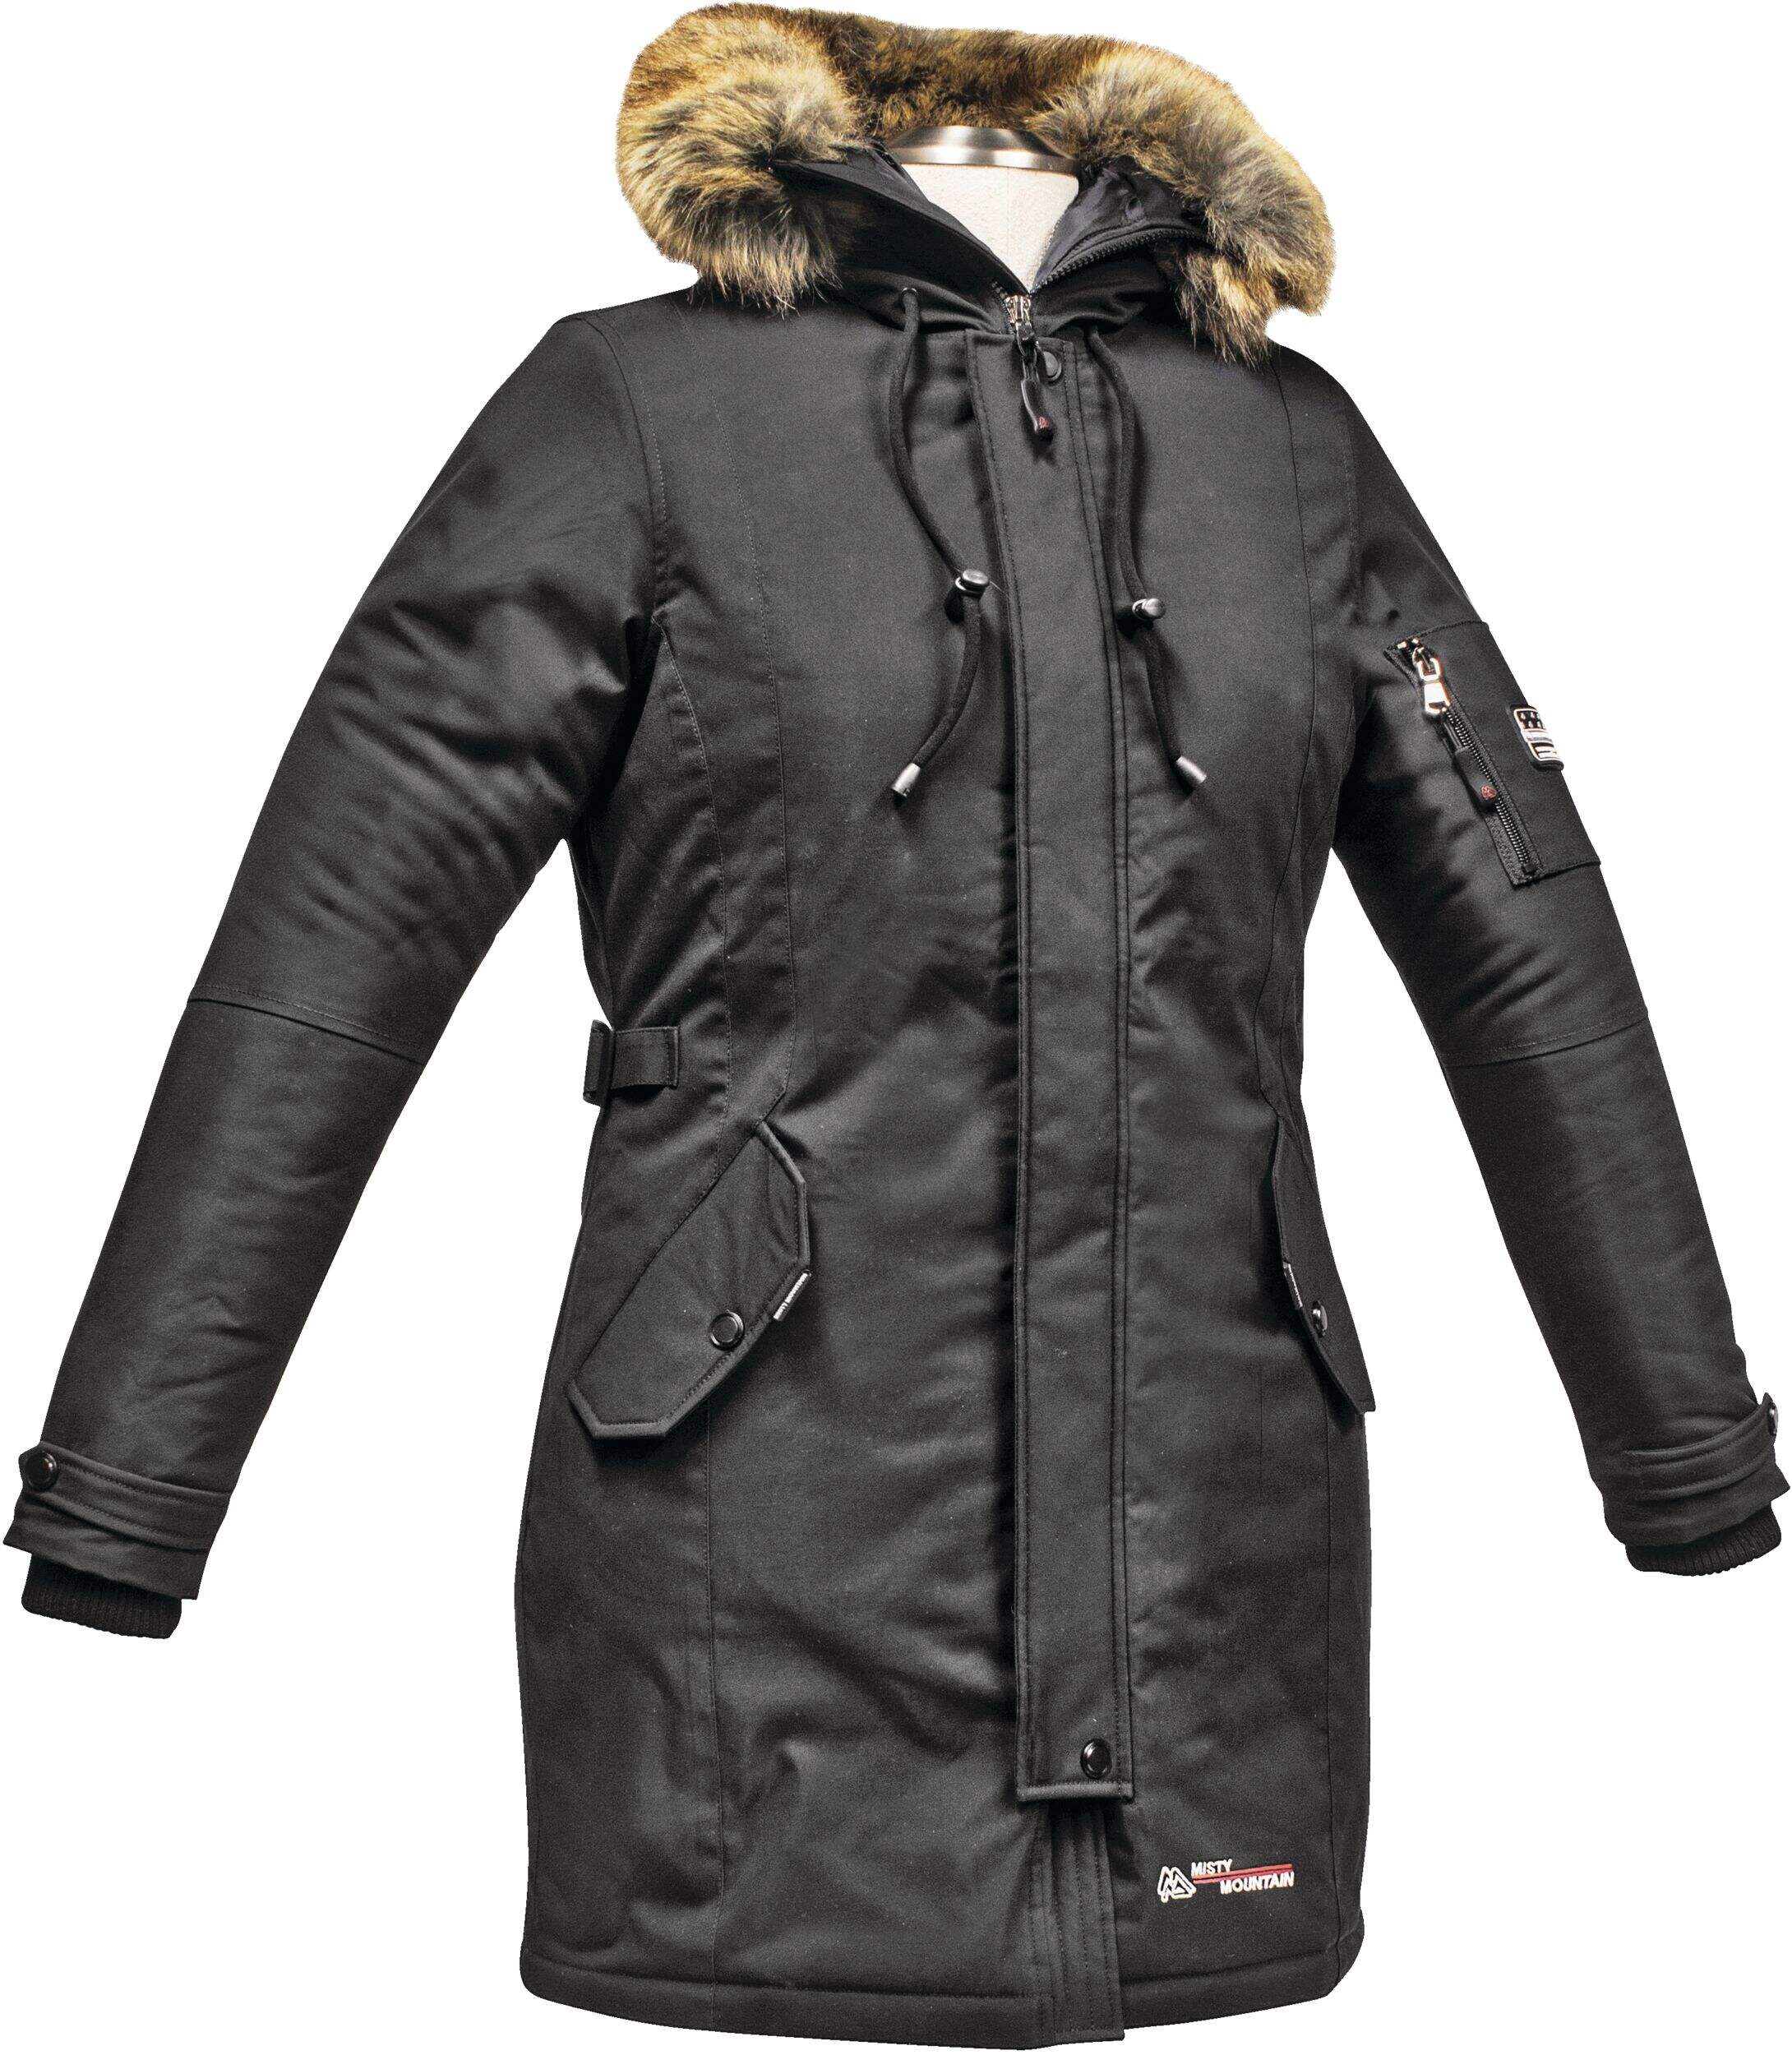 Misty Mountain Women's Killian Insulated Waterproof Winter Parka Jacket ...